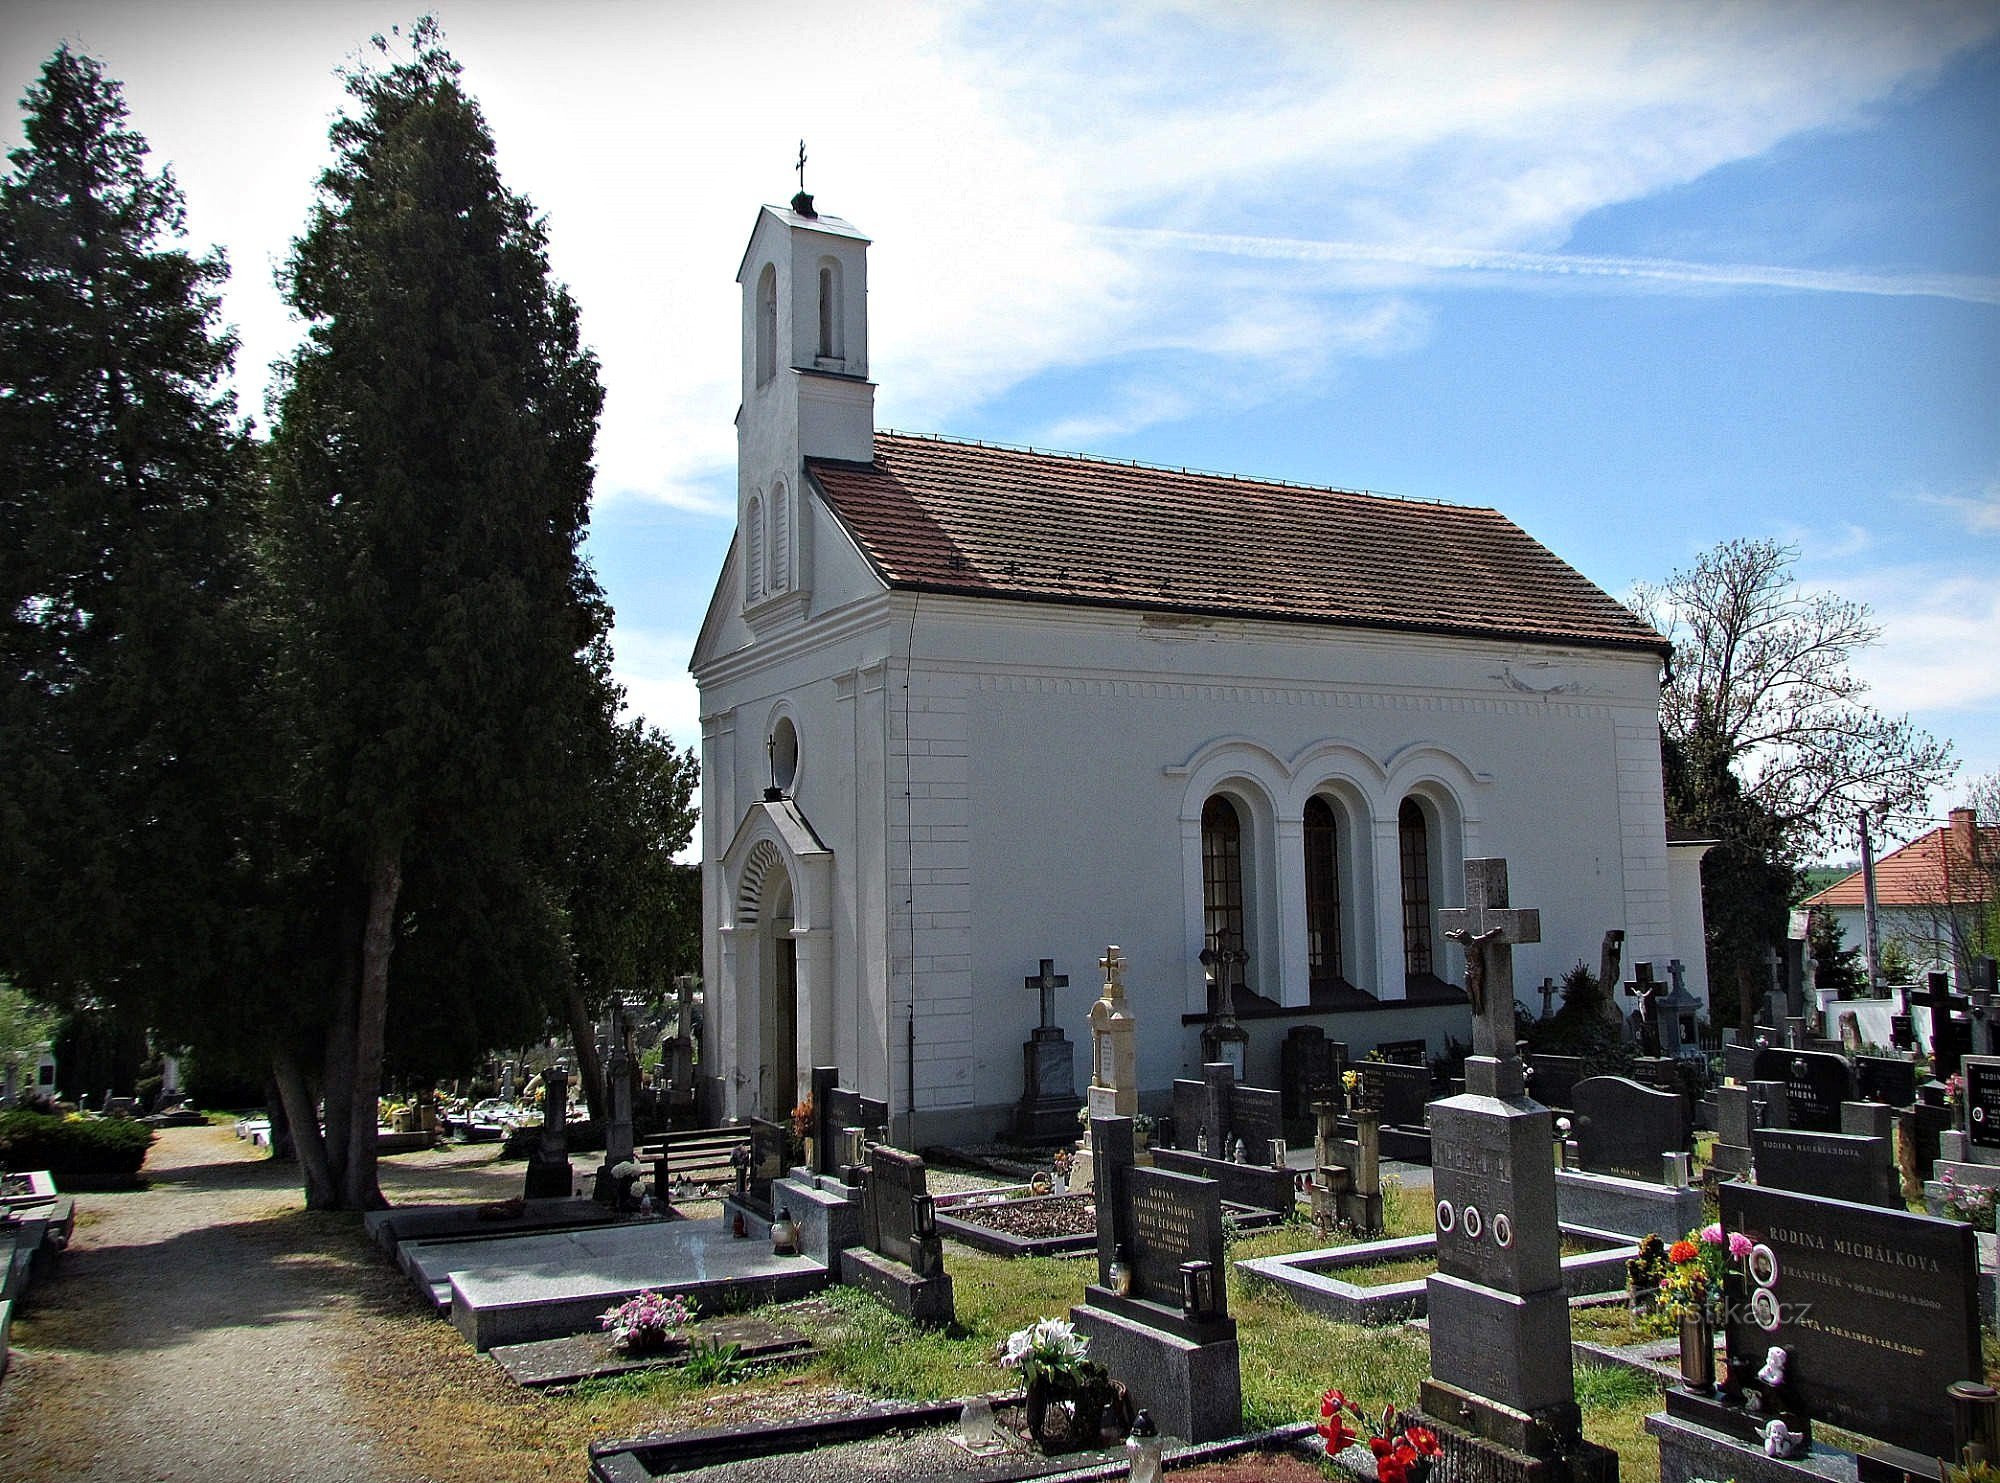 Uherský Brod - Stary cmentarz i kaplica